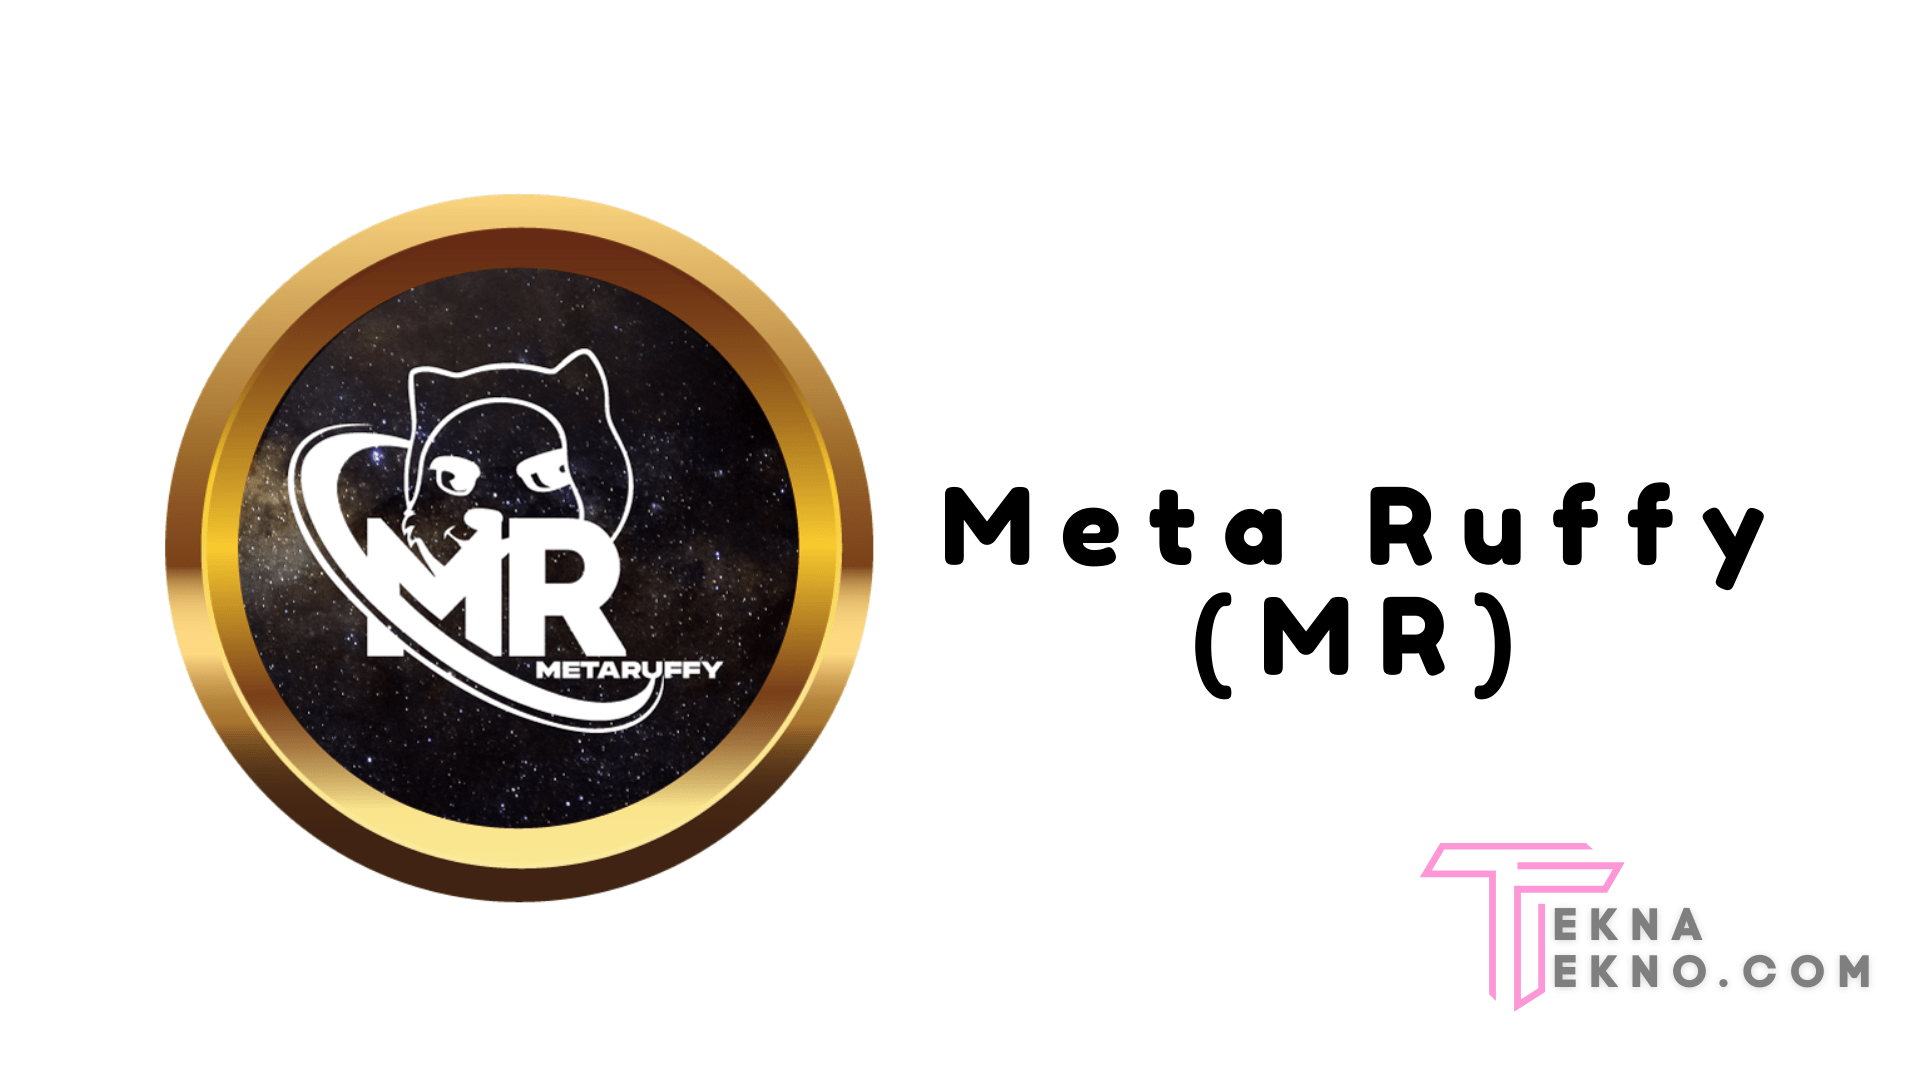 Mengenal Meta Ruffy (MR)